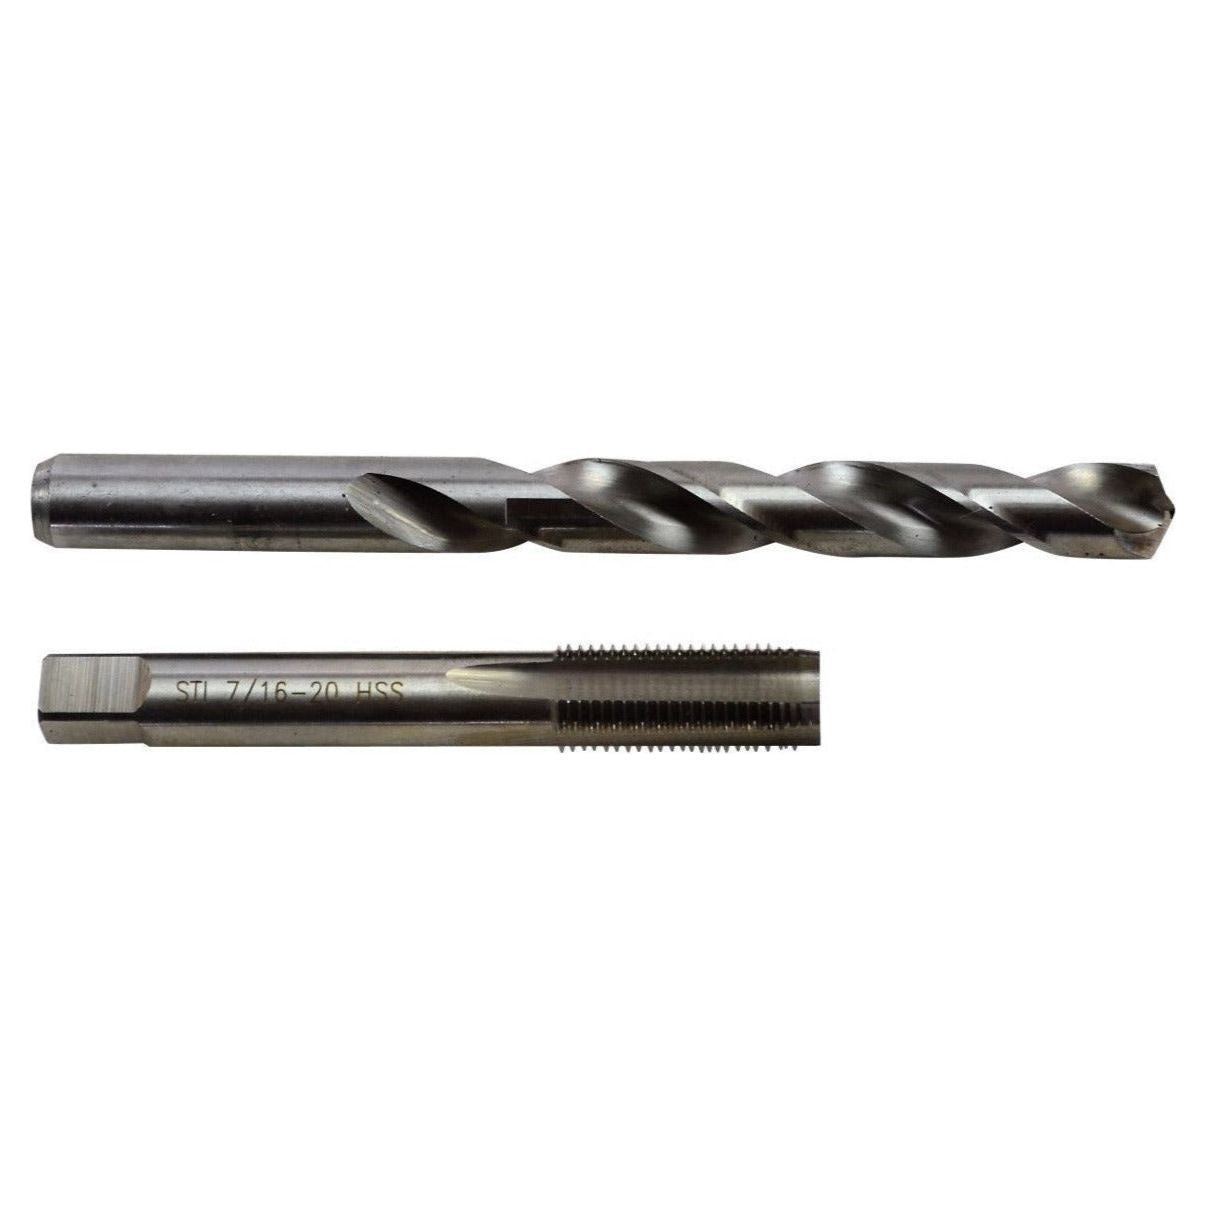 Helicoil Kit 7/16 - 20 thread repair  insert tap set workshop tool imperial